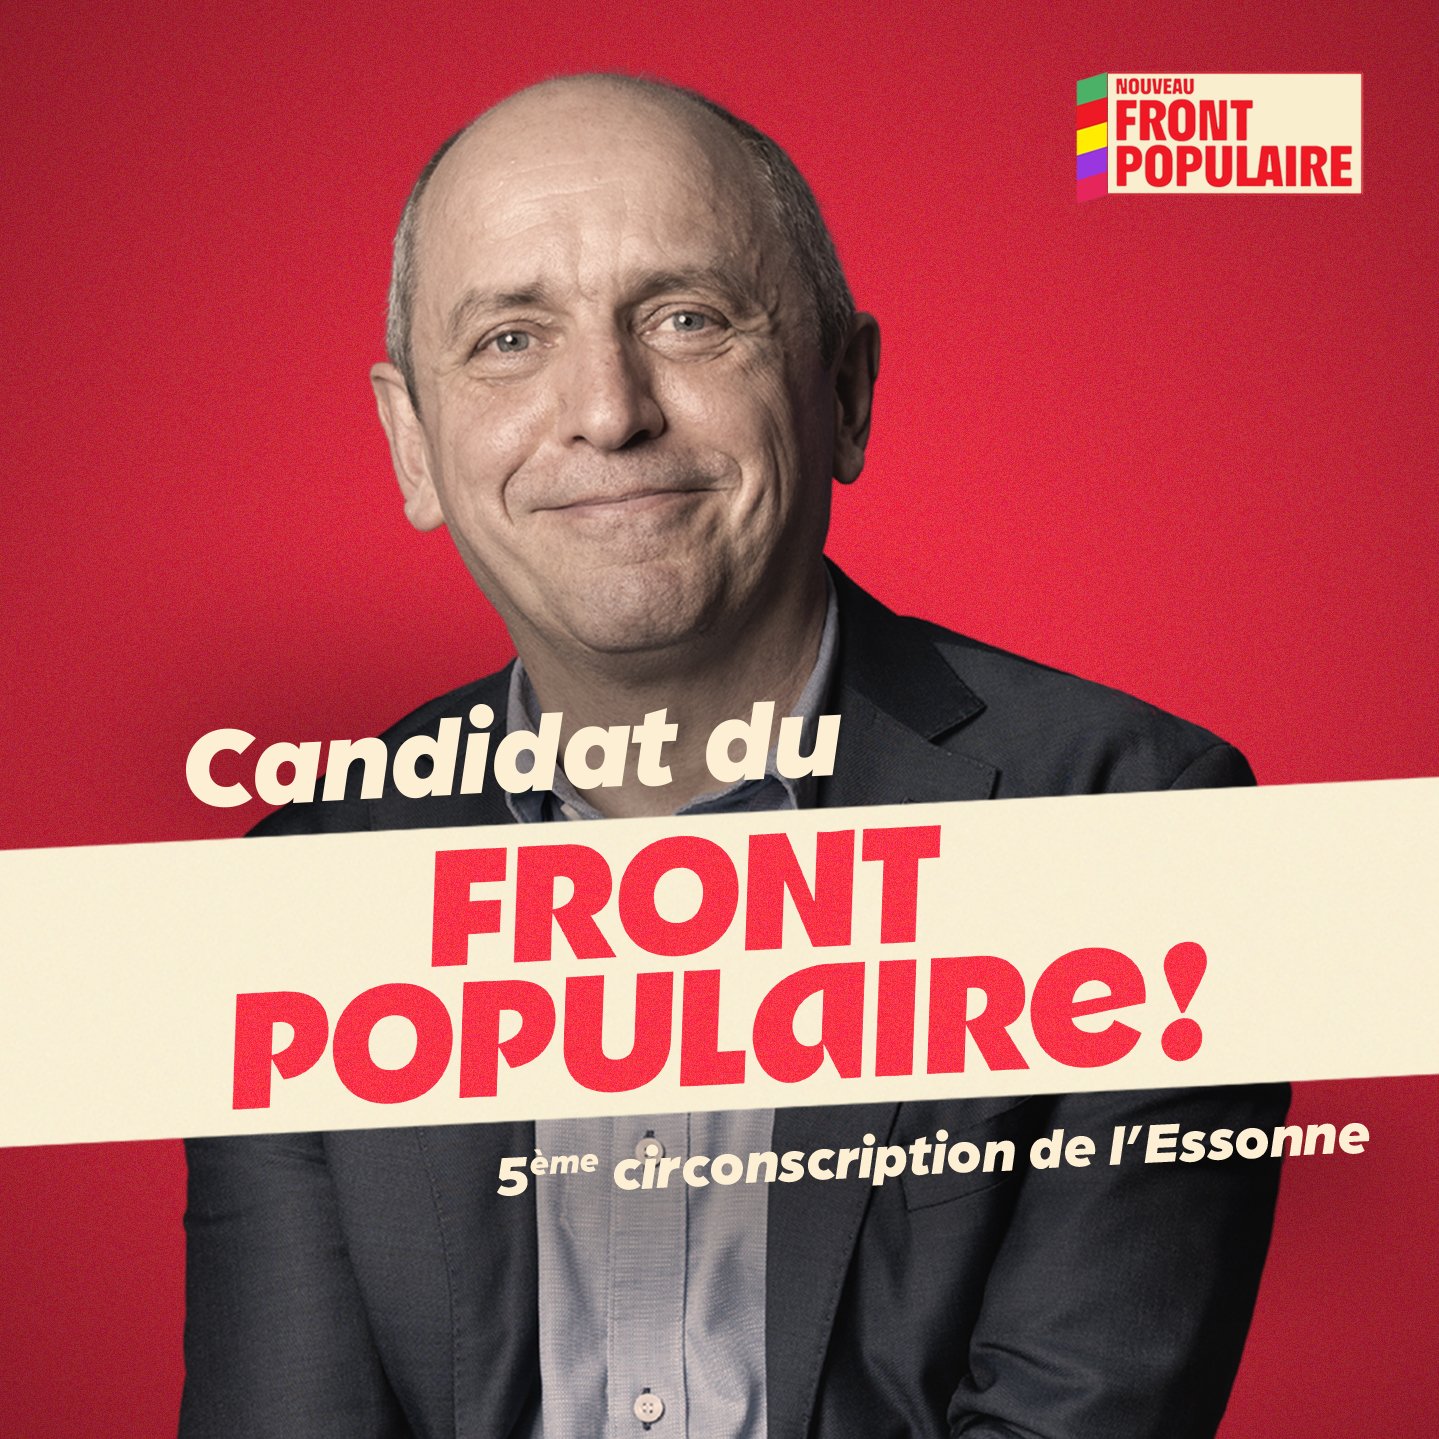 Pierre LARROUTUROU candidat pour le Nouveau Front Populaire, 5ème circonscription de l'Essonne